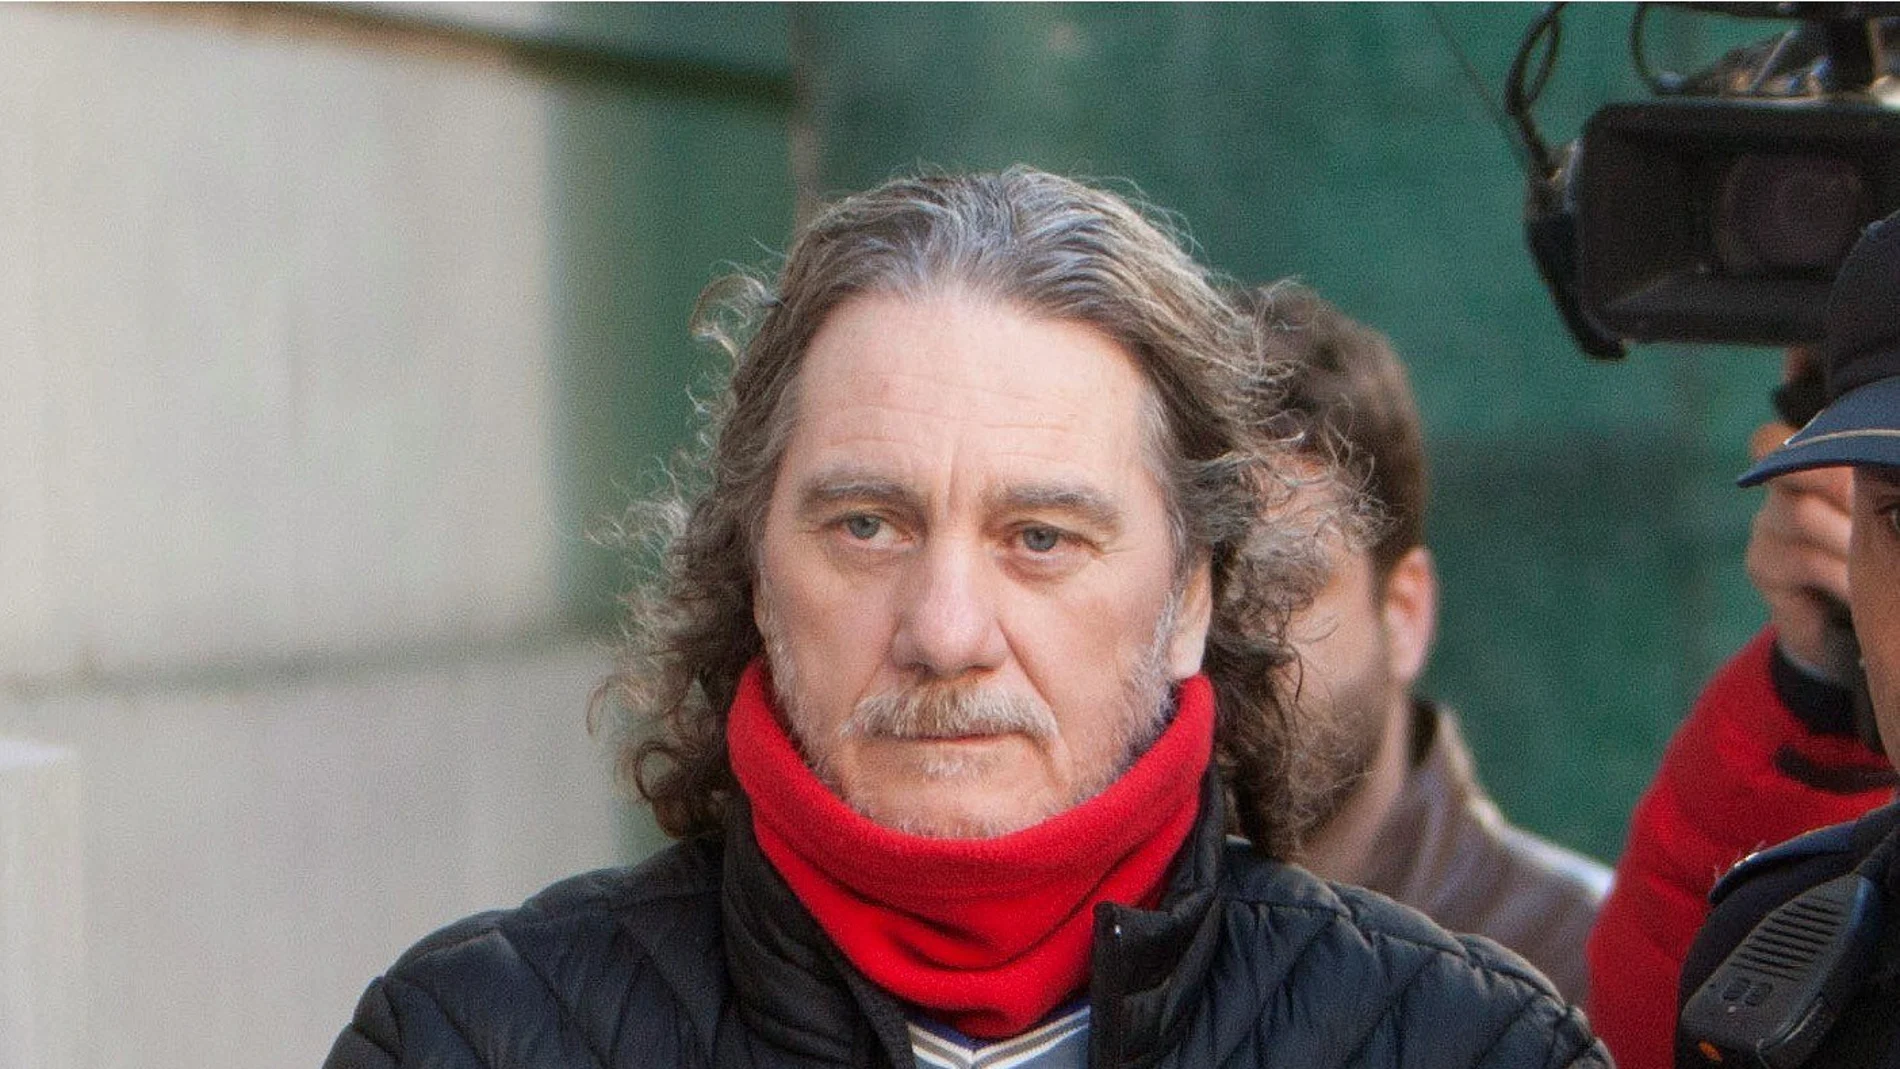 El narcotraficante José Ramón Prado Bugallo, "Sito Miñanco" acude a la Audiencia de Pontevedra para ser juzgado por blanqueo